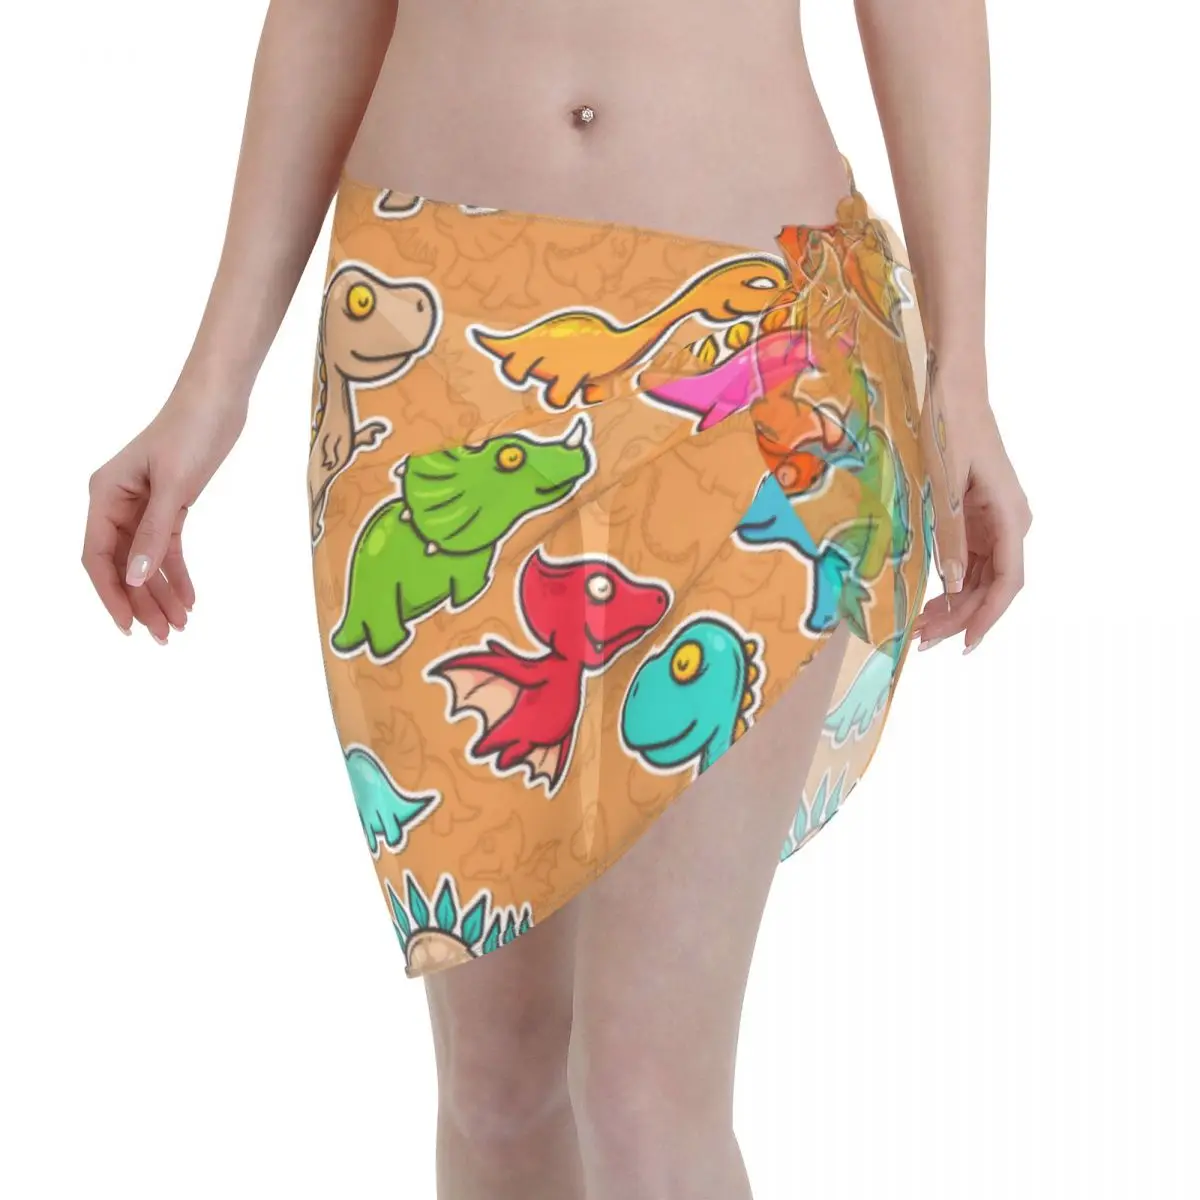 

Женская одежда для плавания, накидка на бикини, разноцветная пляжная мини-юбка с запахом динозавра, шорты парео, летняя пляжная одежда